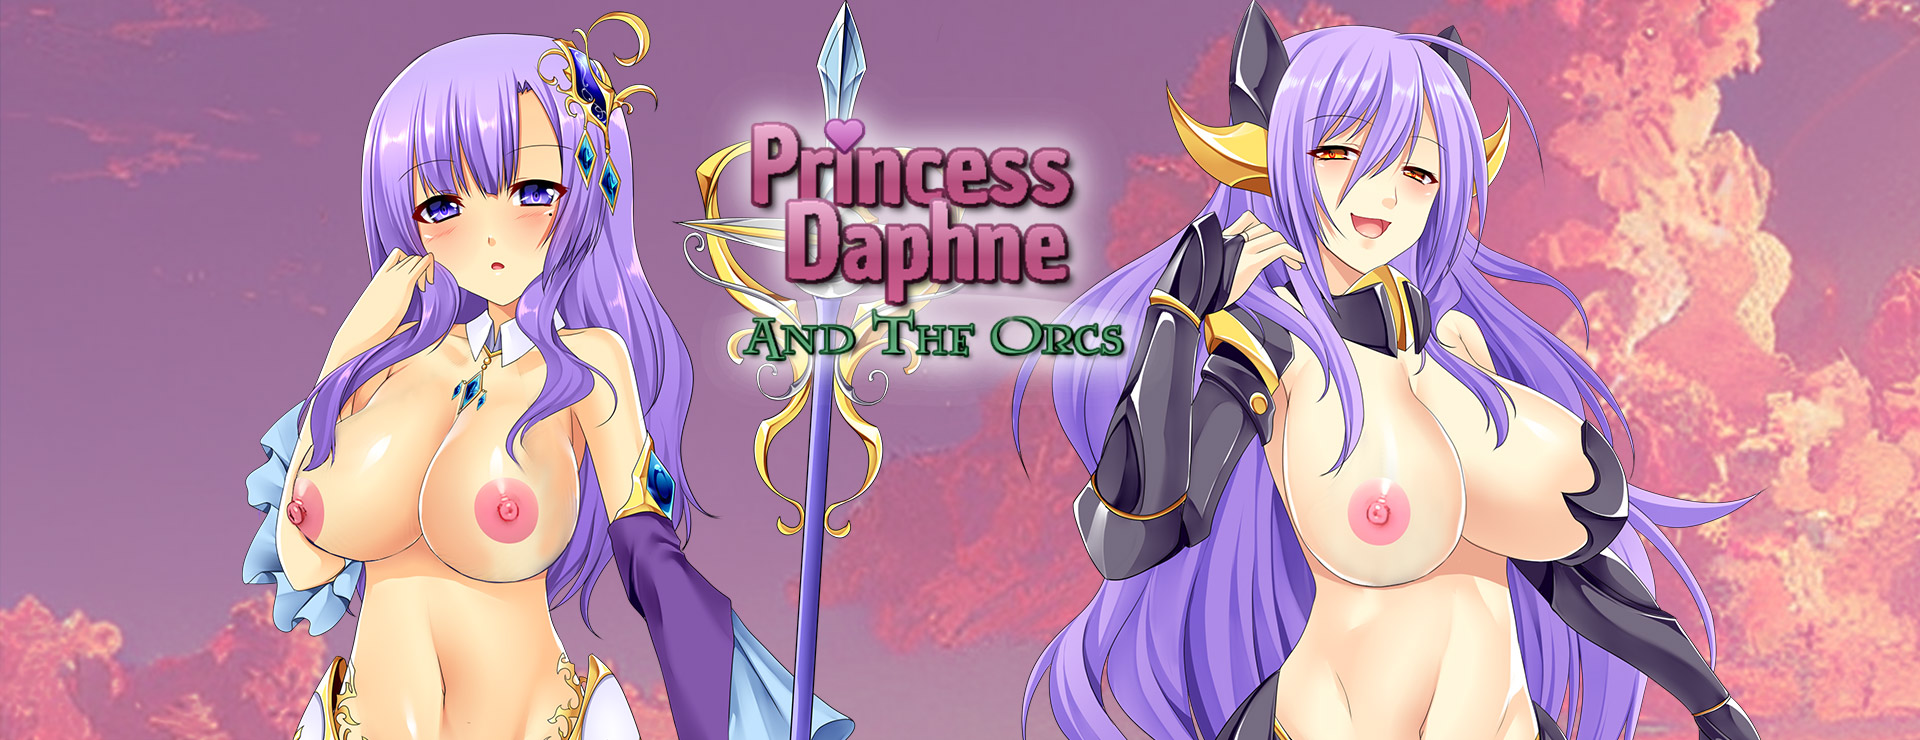 Princess Daphne and the Orcs - RPG Jeu